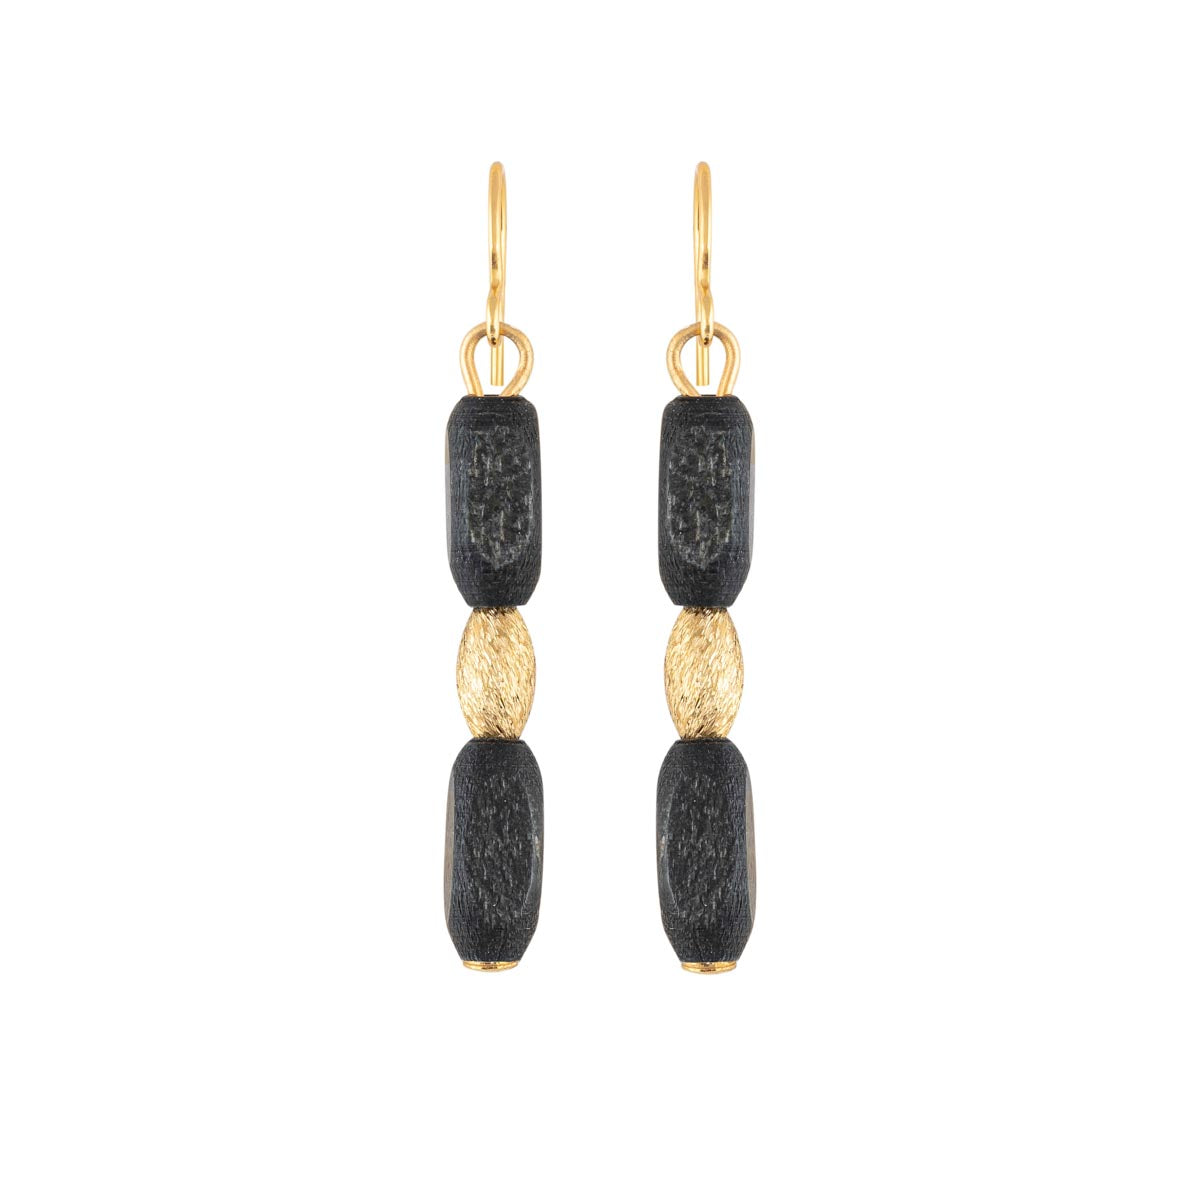 Elvira earrings, black and gold